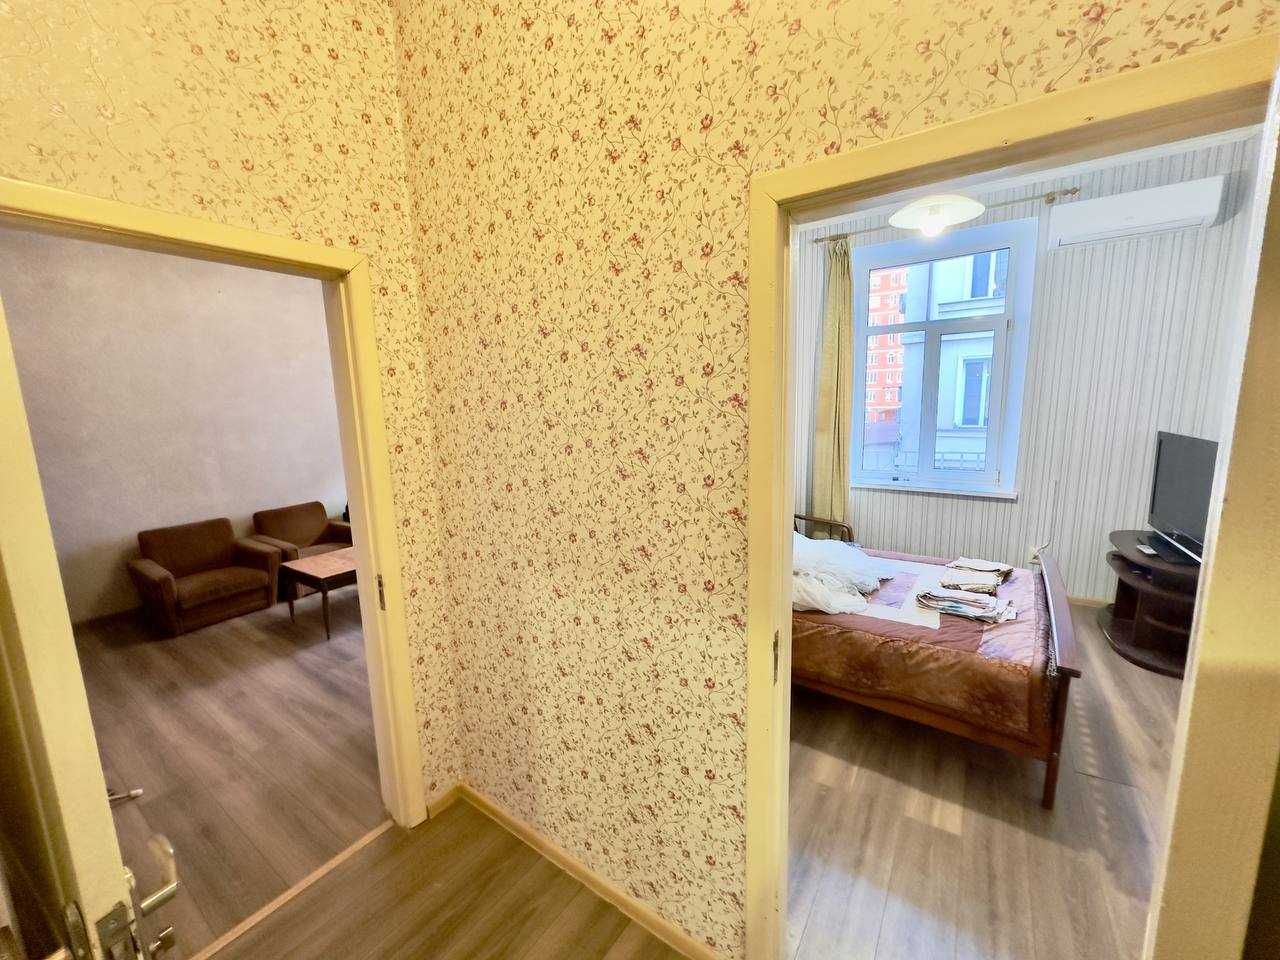 Еврейская/2-х комнатная квартира в Бельгийке